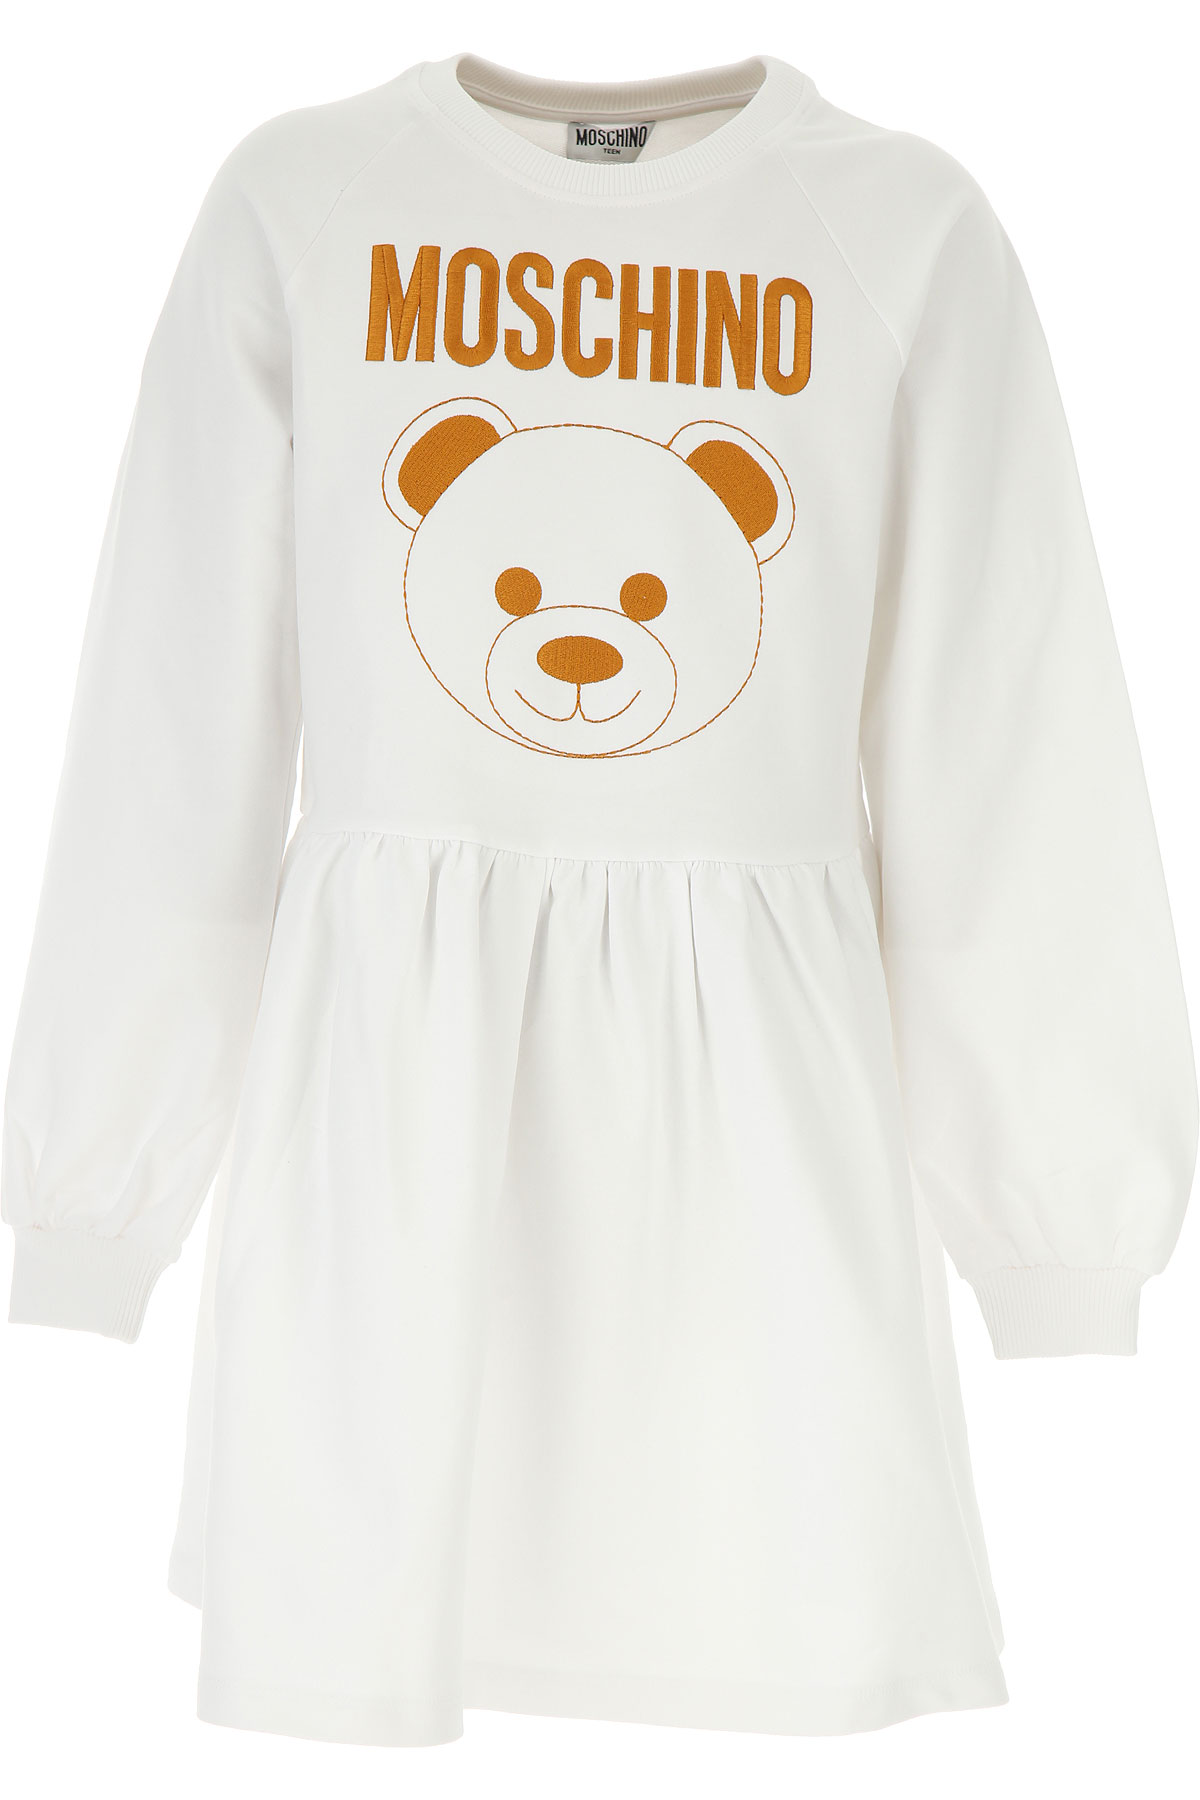 Moschino Kleid für Mädchen Günstig im Sale, Weiss, Baumwolle, 2017, 10Y 12Y 14Y 8Y